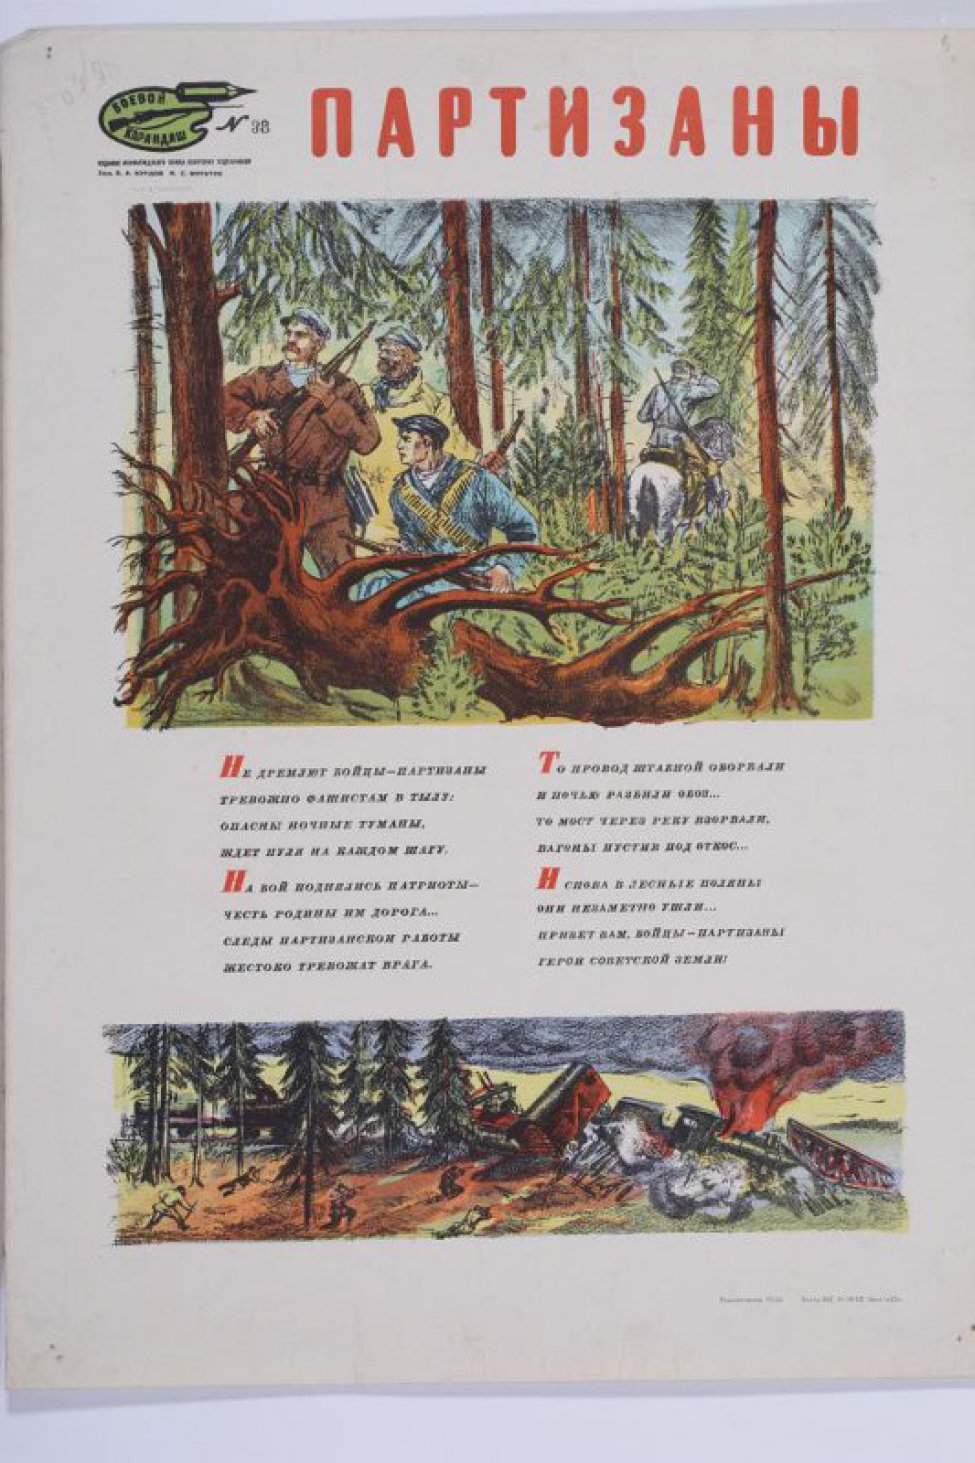 Изображен на пером рисунке лес и в нем партизаны, на втором- взорванный мост и горящие вагоны вражеского эшелона.Между рисунками текст:" Не дремлют...земли".